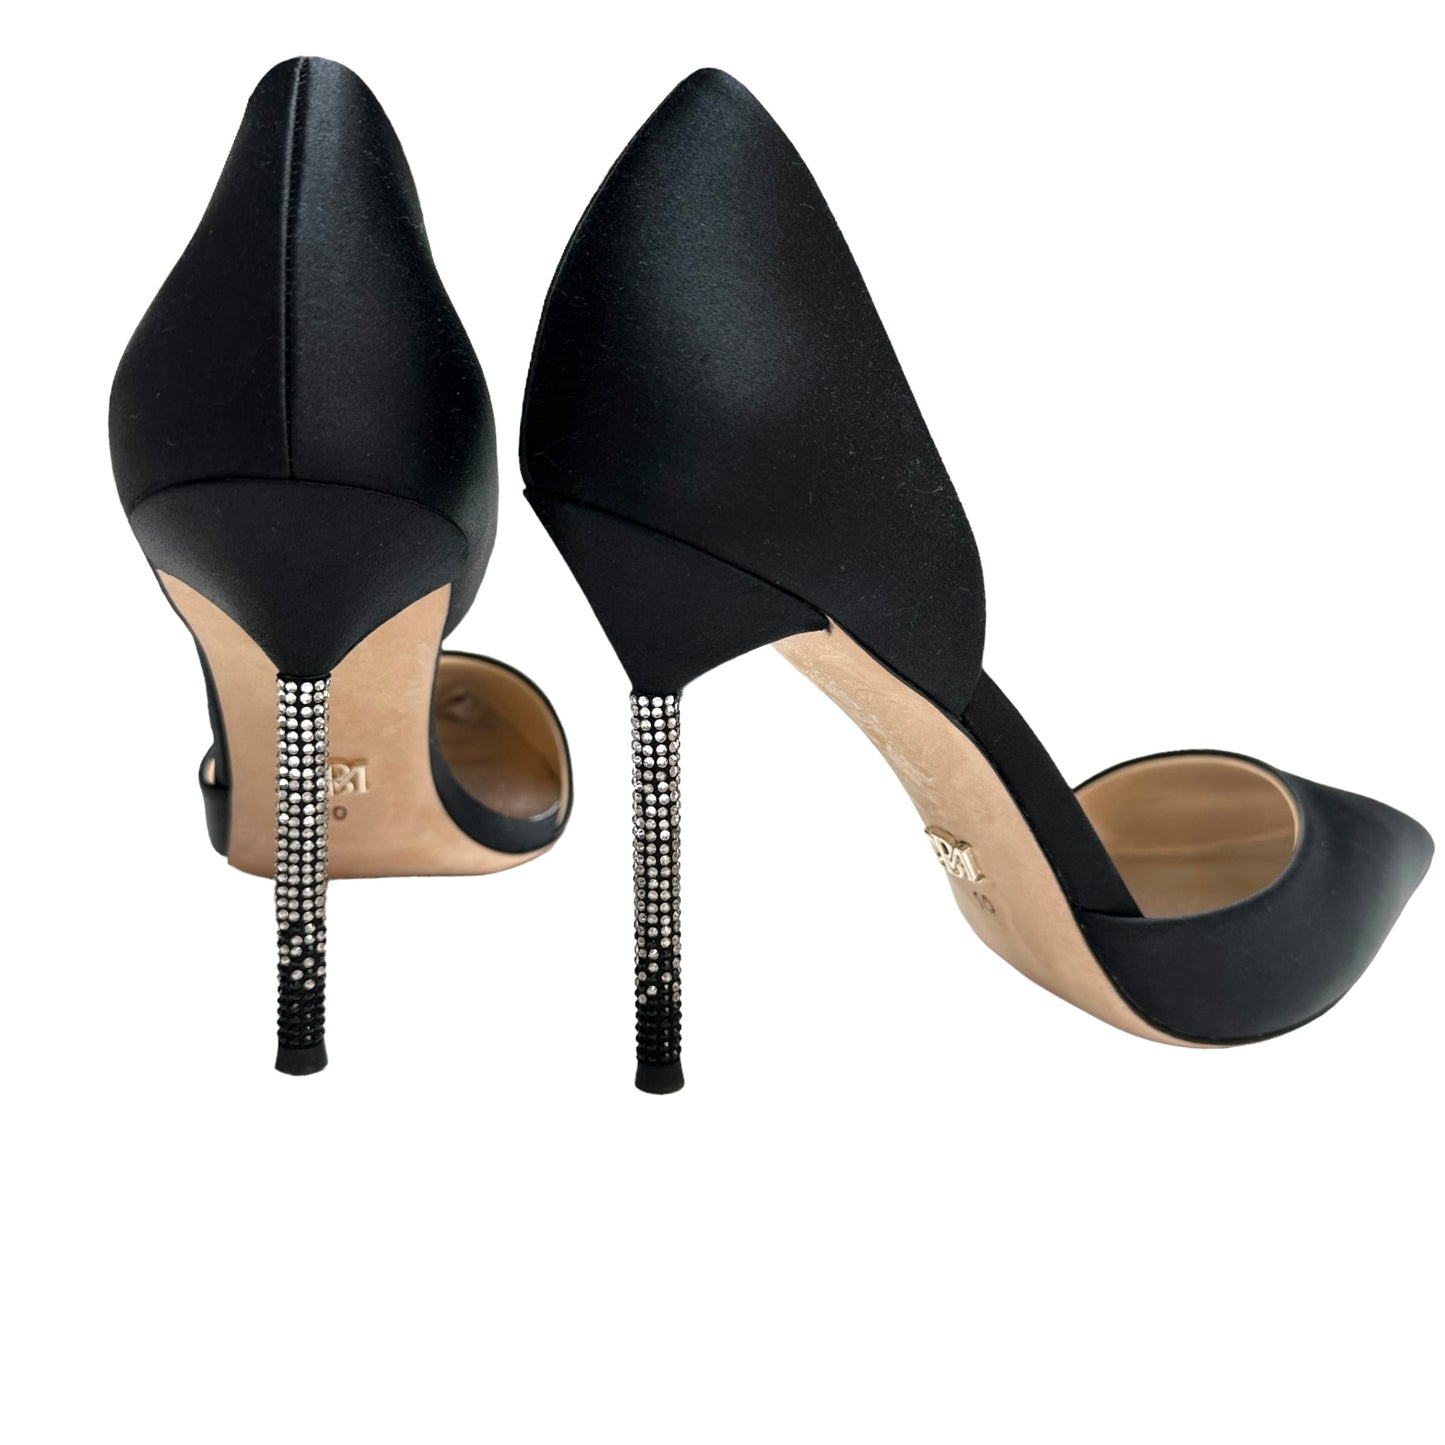 Black Crystal Embellished Heels - 10